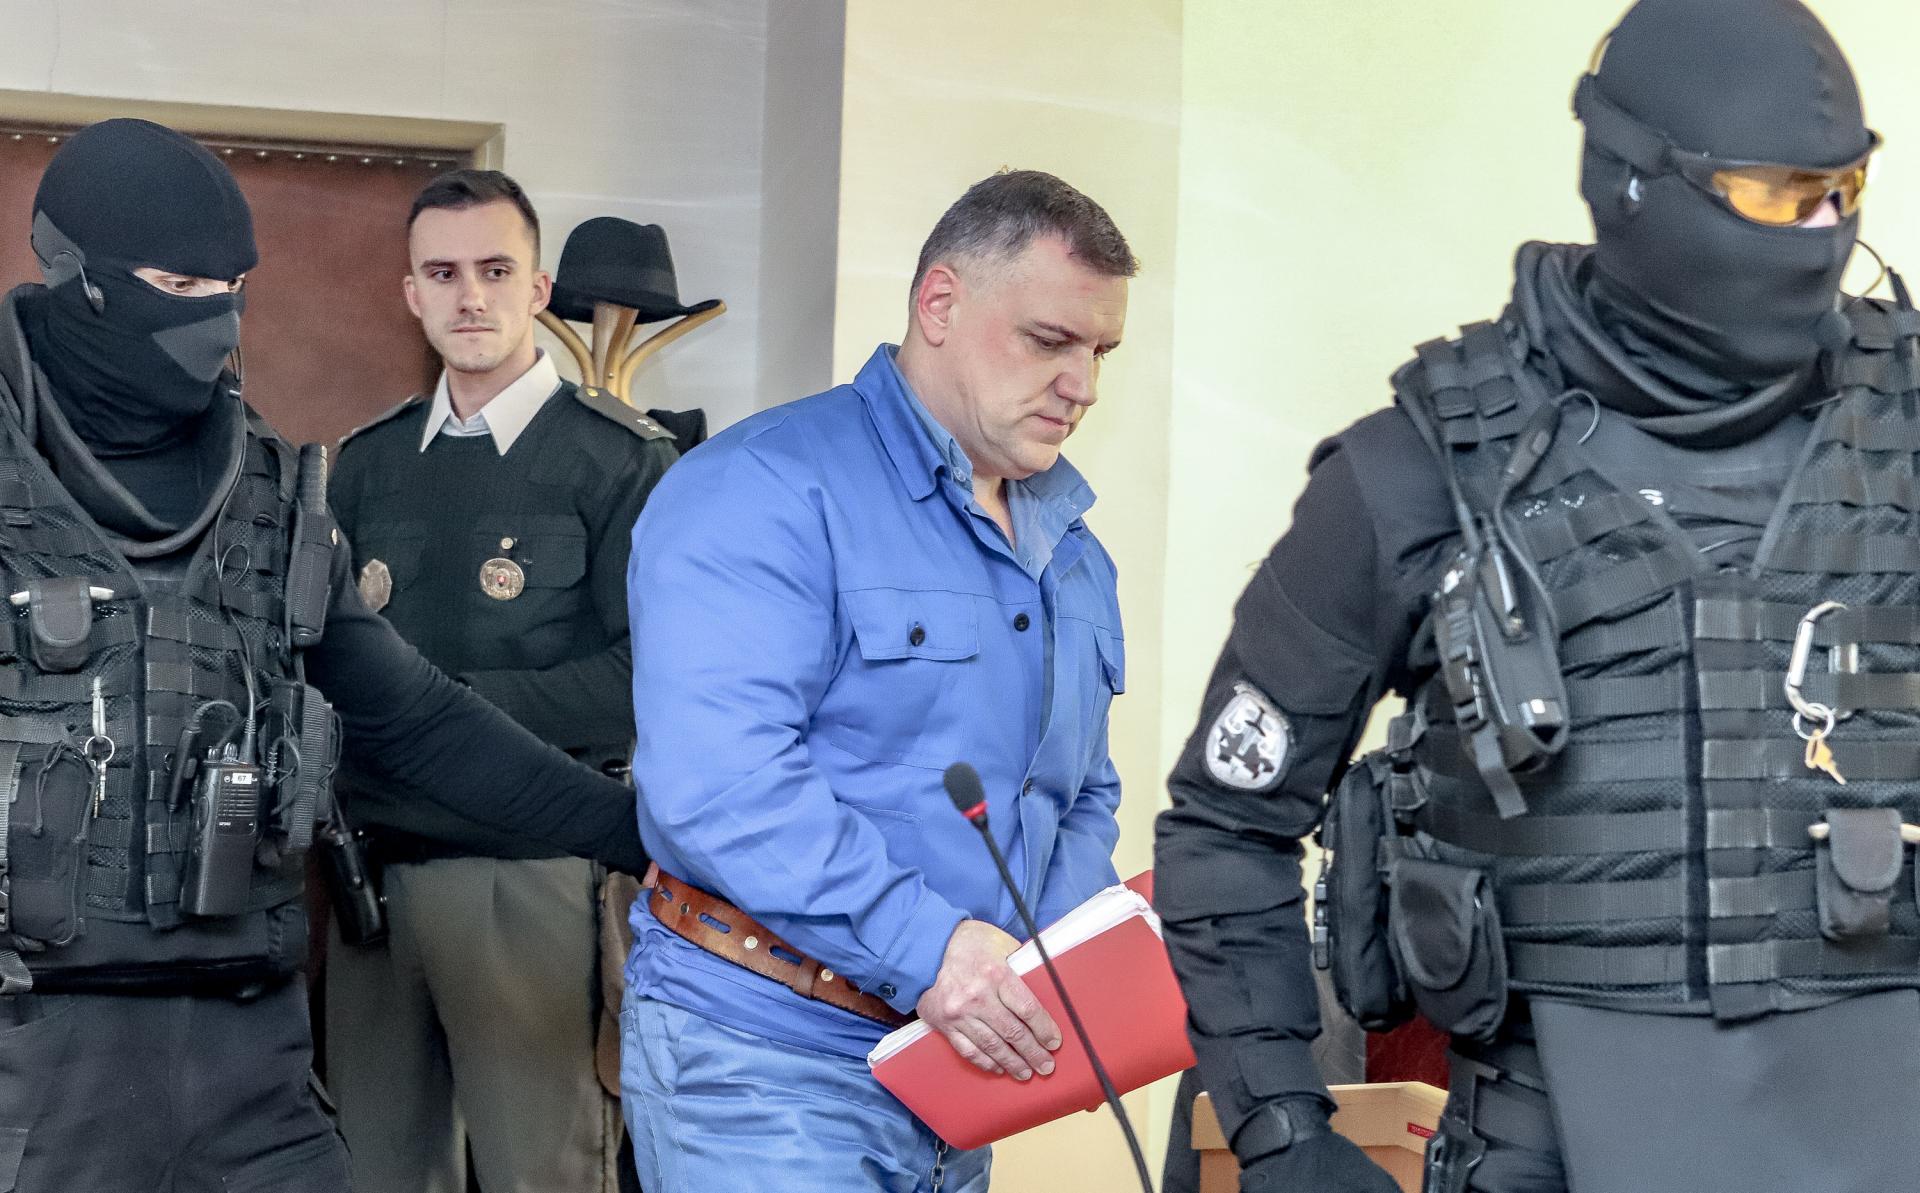 Mafiánsky bos Mikuláš Černák môže byť prepustený. Cieľom trestu nie je pomsta, ale zmena, tvrdí psychológ